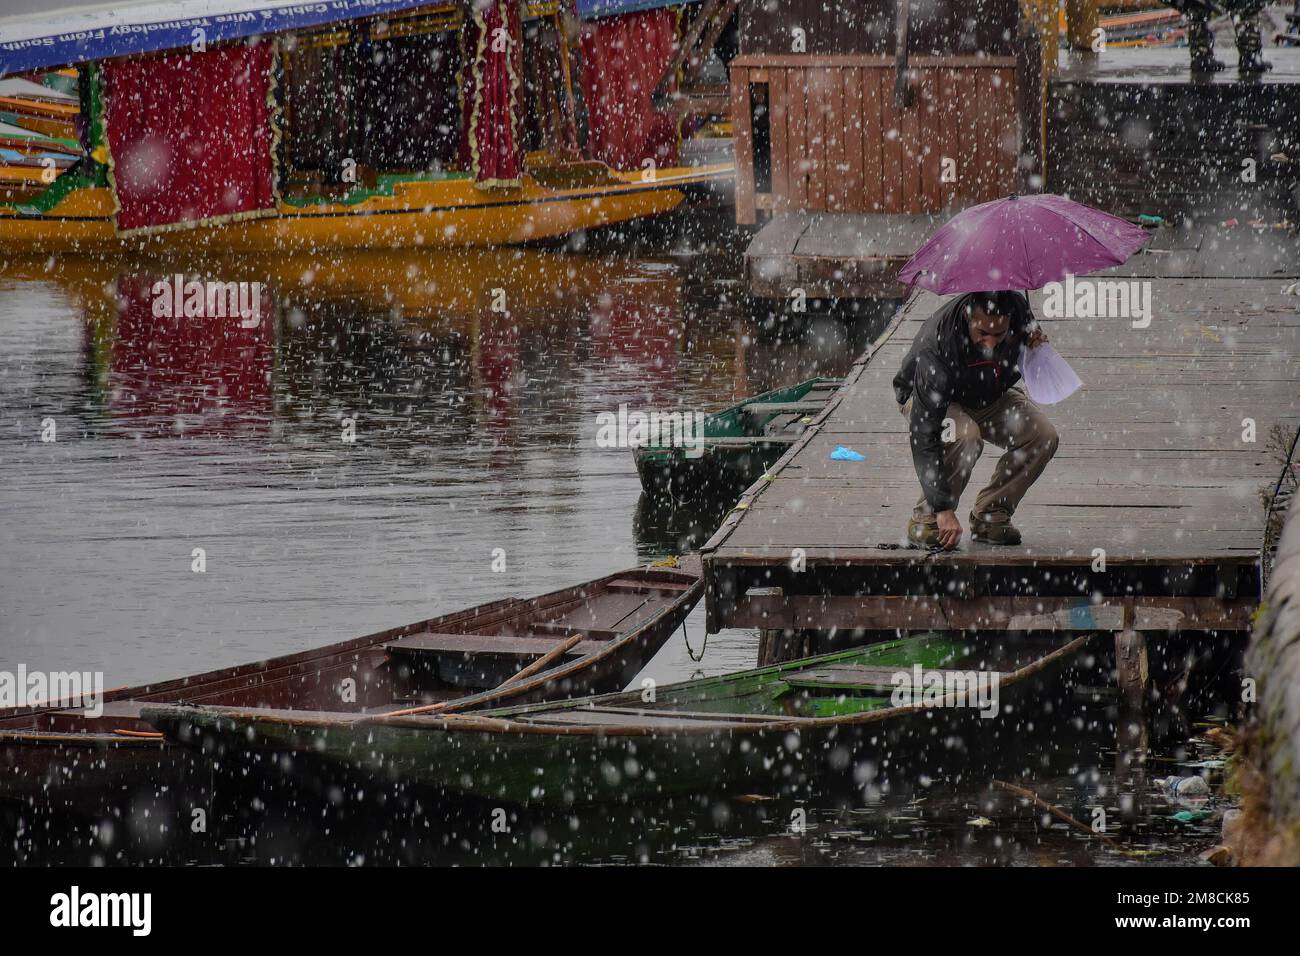 Un barcaiolo lega la sua barca alle rive del lago dal durante le nevicate. Parti della valle di Kashmir compreso Srinagar ha ricevuto nevicate che portano alla chiusura della vitale Srinagar-Jammu autostrada nazionale e la cancellazione delle operazioni di volo, funzionari qui ha detto. Foto Stock